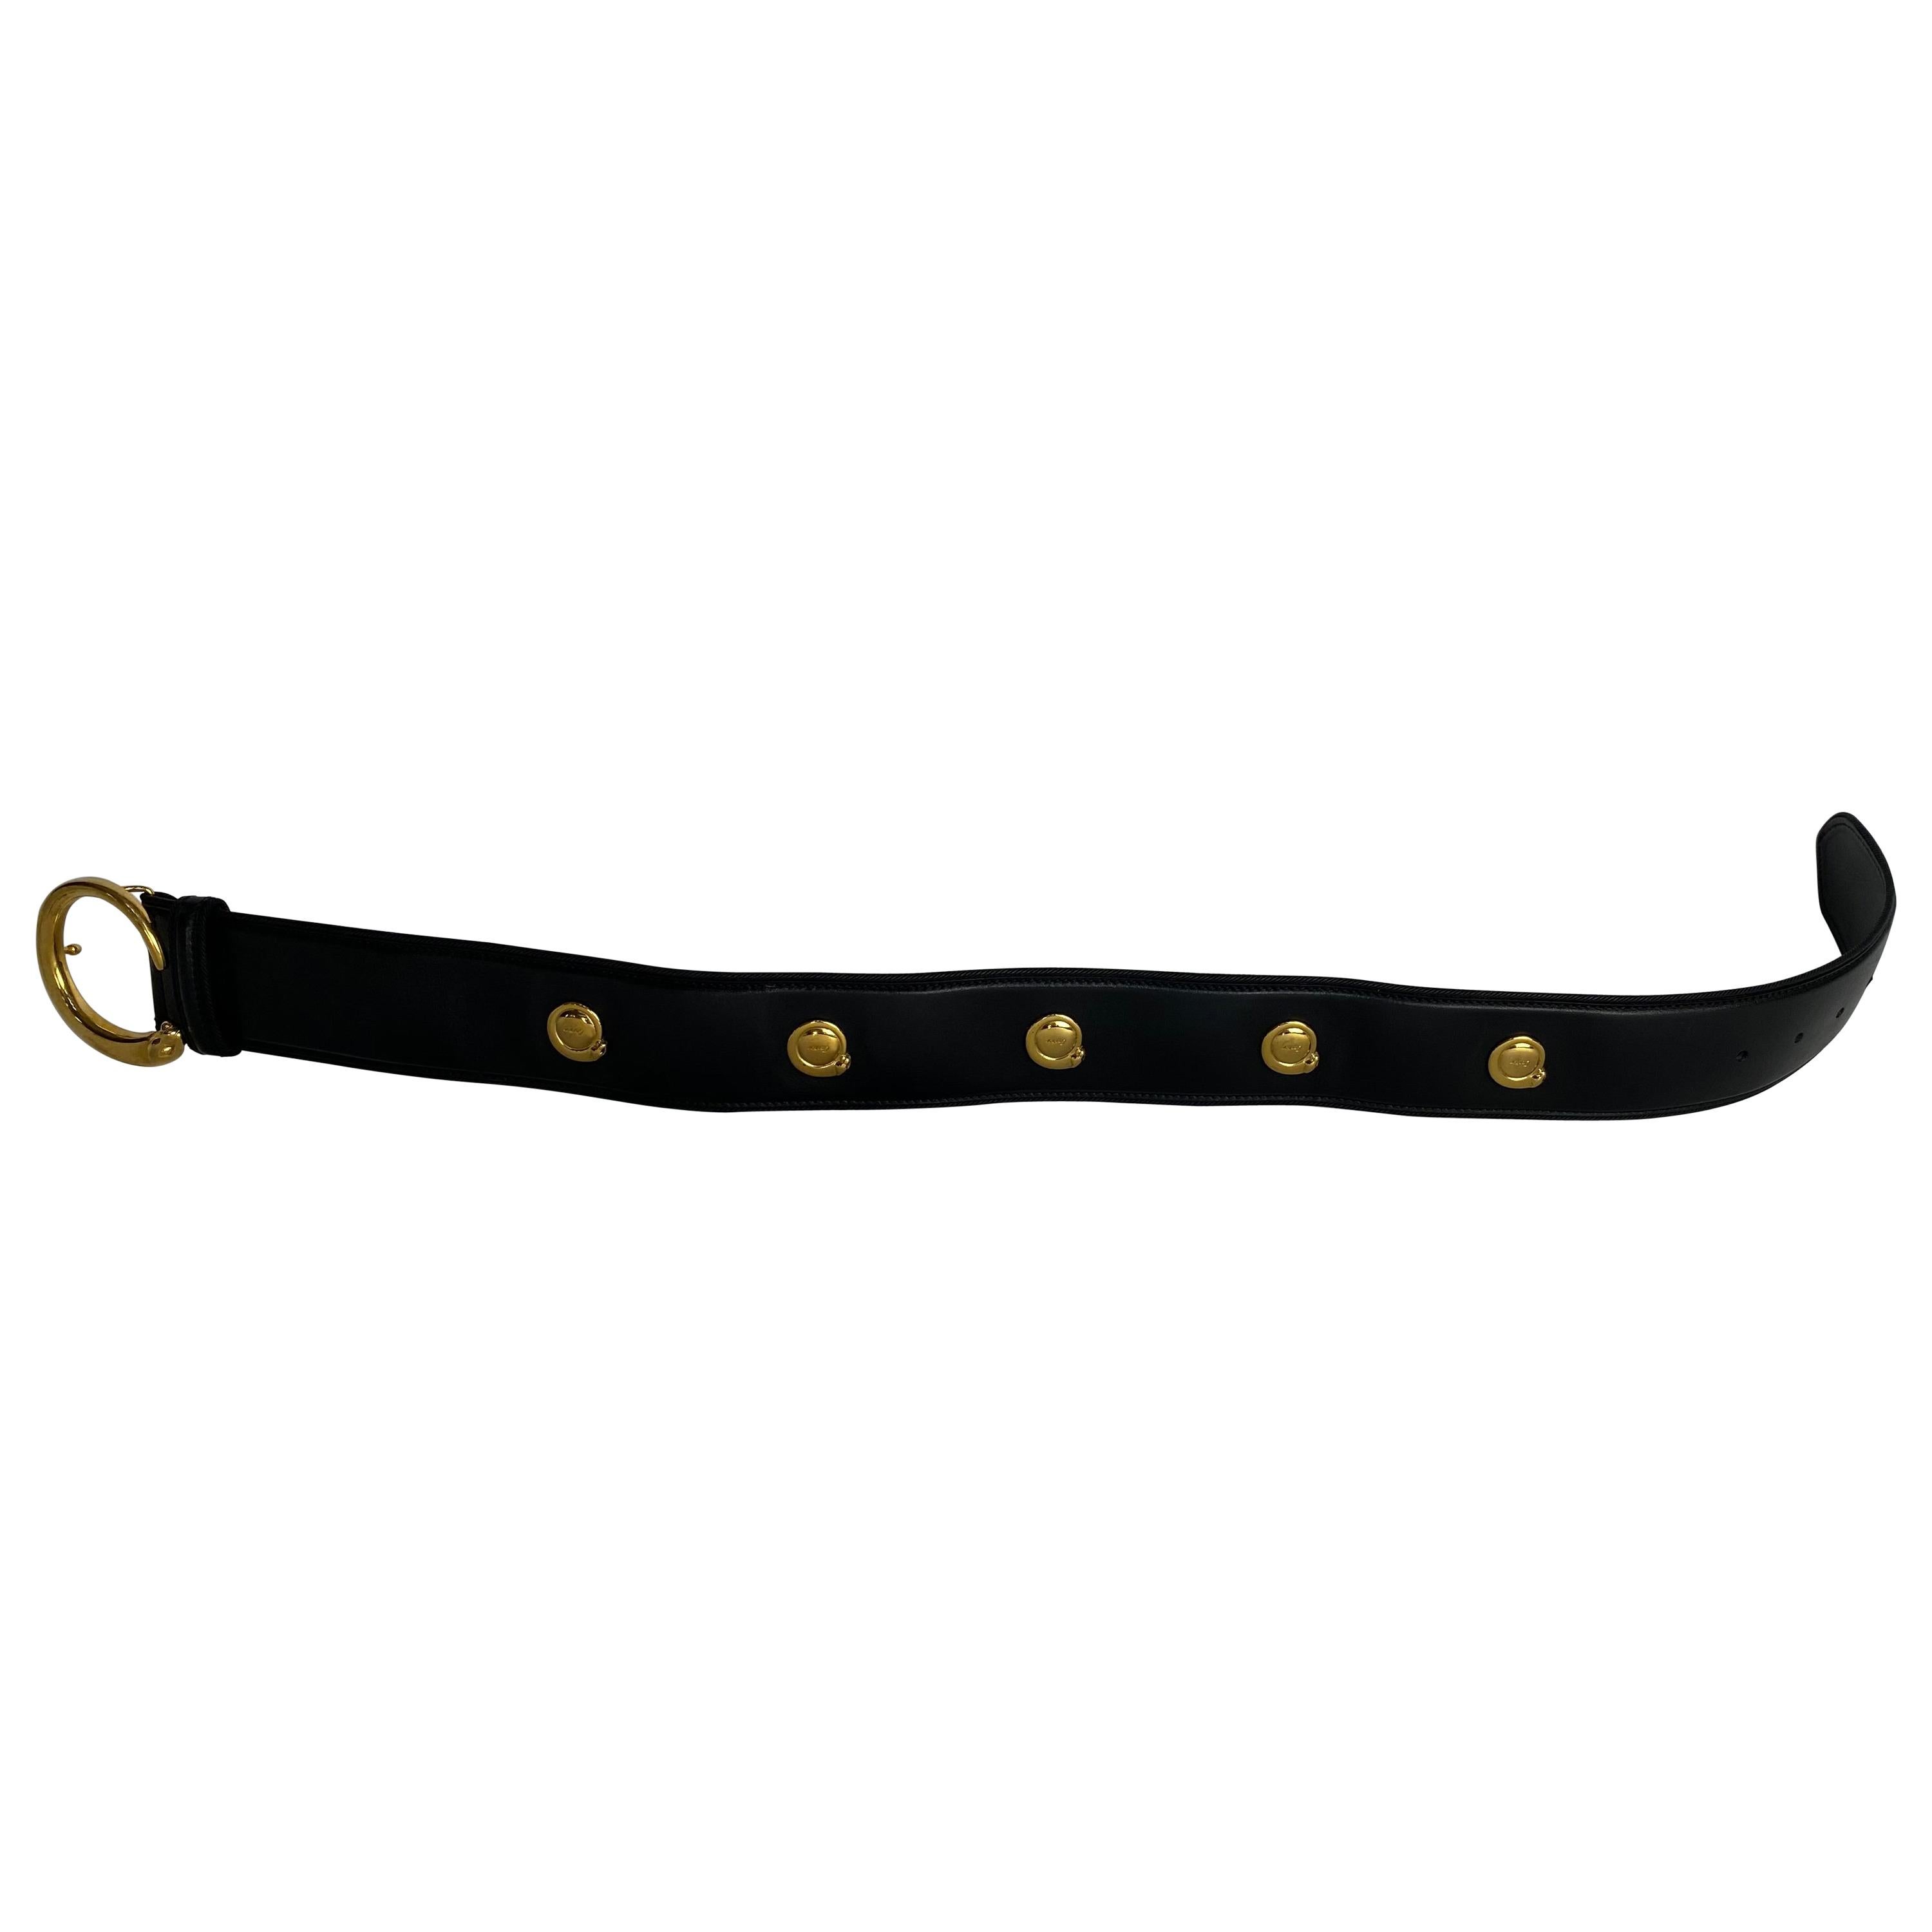 Ein schwarzer Cartier-Gürtel mit goldener Schnalle und 5 kleinen goldenen Jaguarknöpfen, jeder Knopf mit Cartier-Markierung, die goldene Jaguarschnalle ebenfalls mit Cartier 1930-Markierung, Größe klein. Der Gürtel ist außen aus schwarzem Leder und